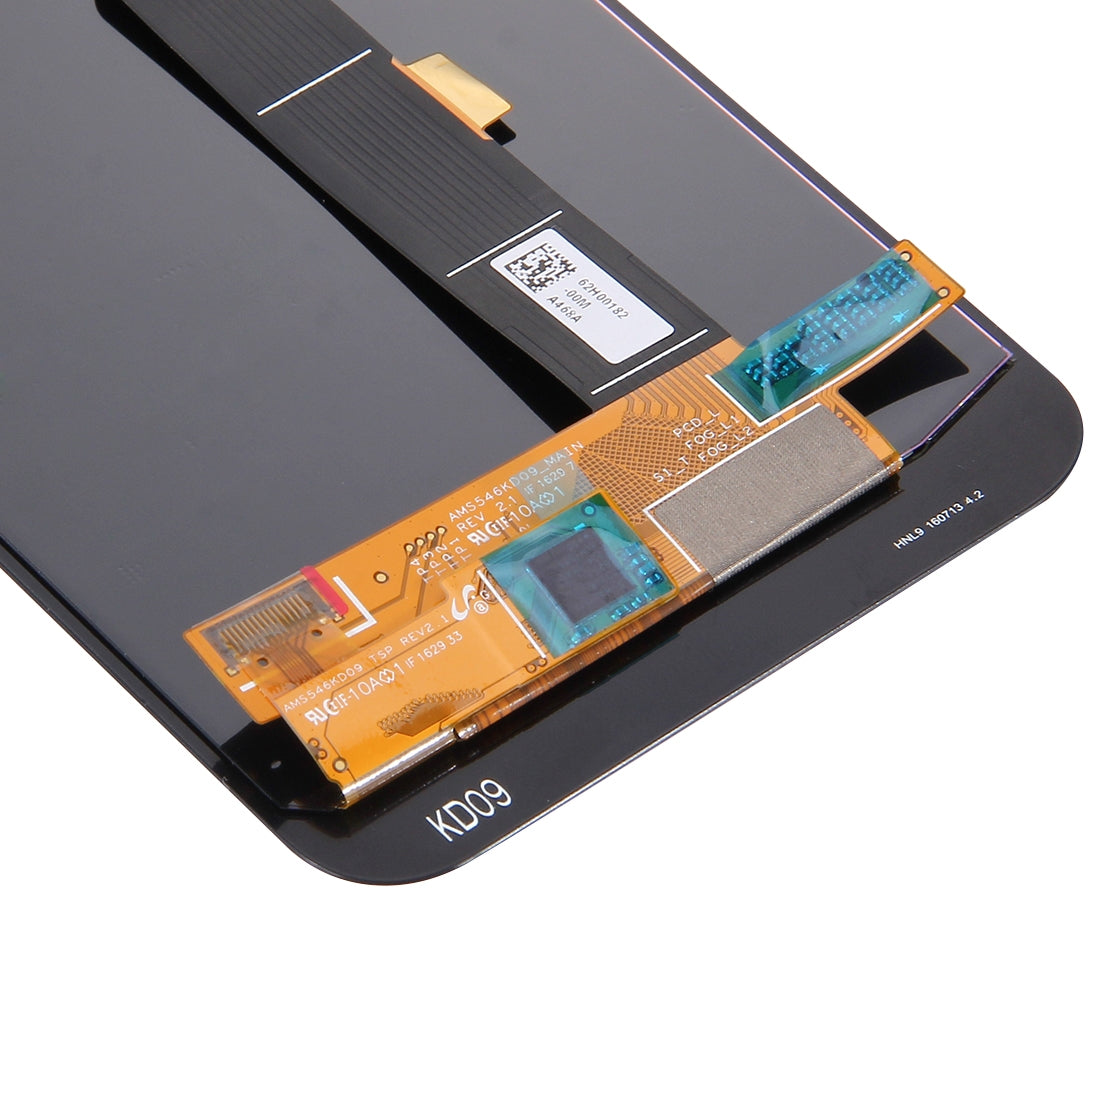 Pantalla LCD + Tactil Digitalizador Google Pixel XL Nexus M1 Negro